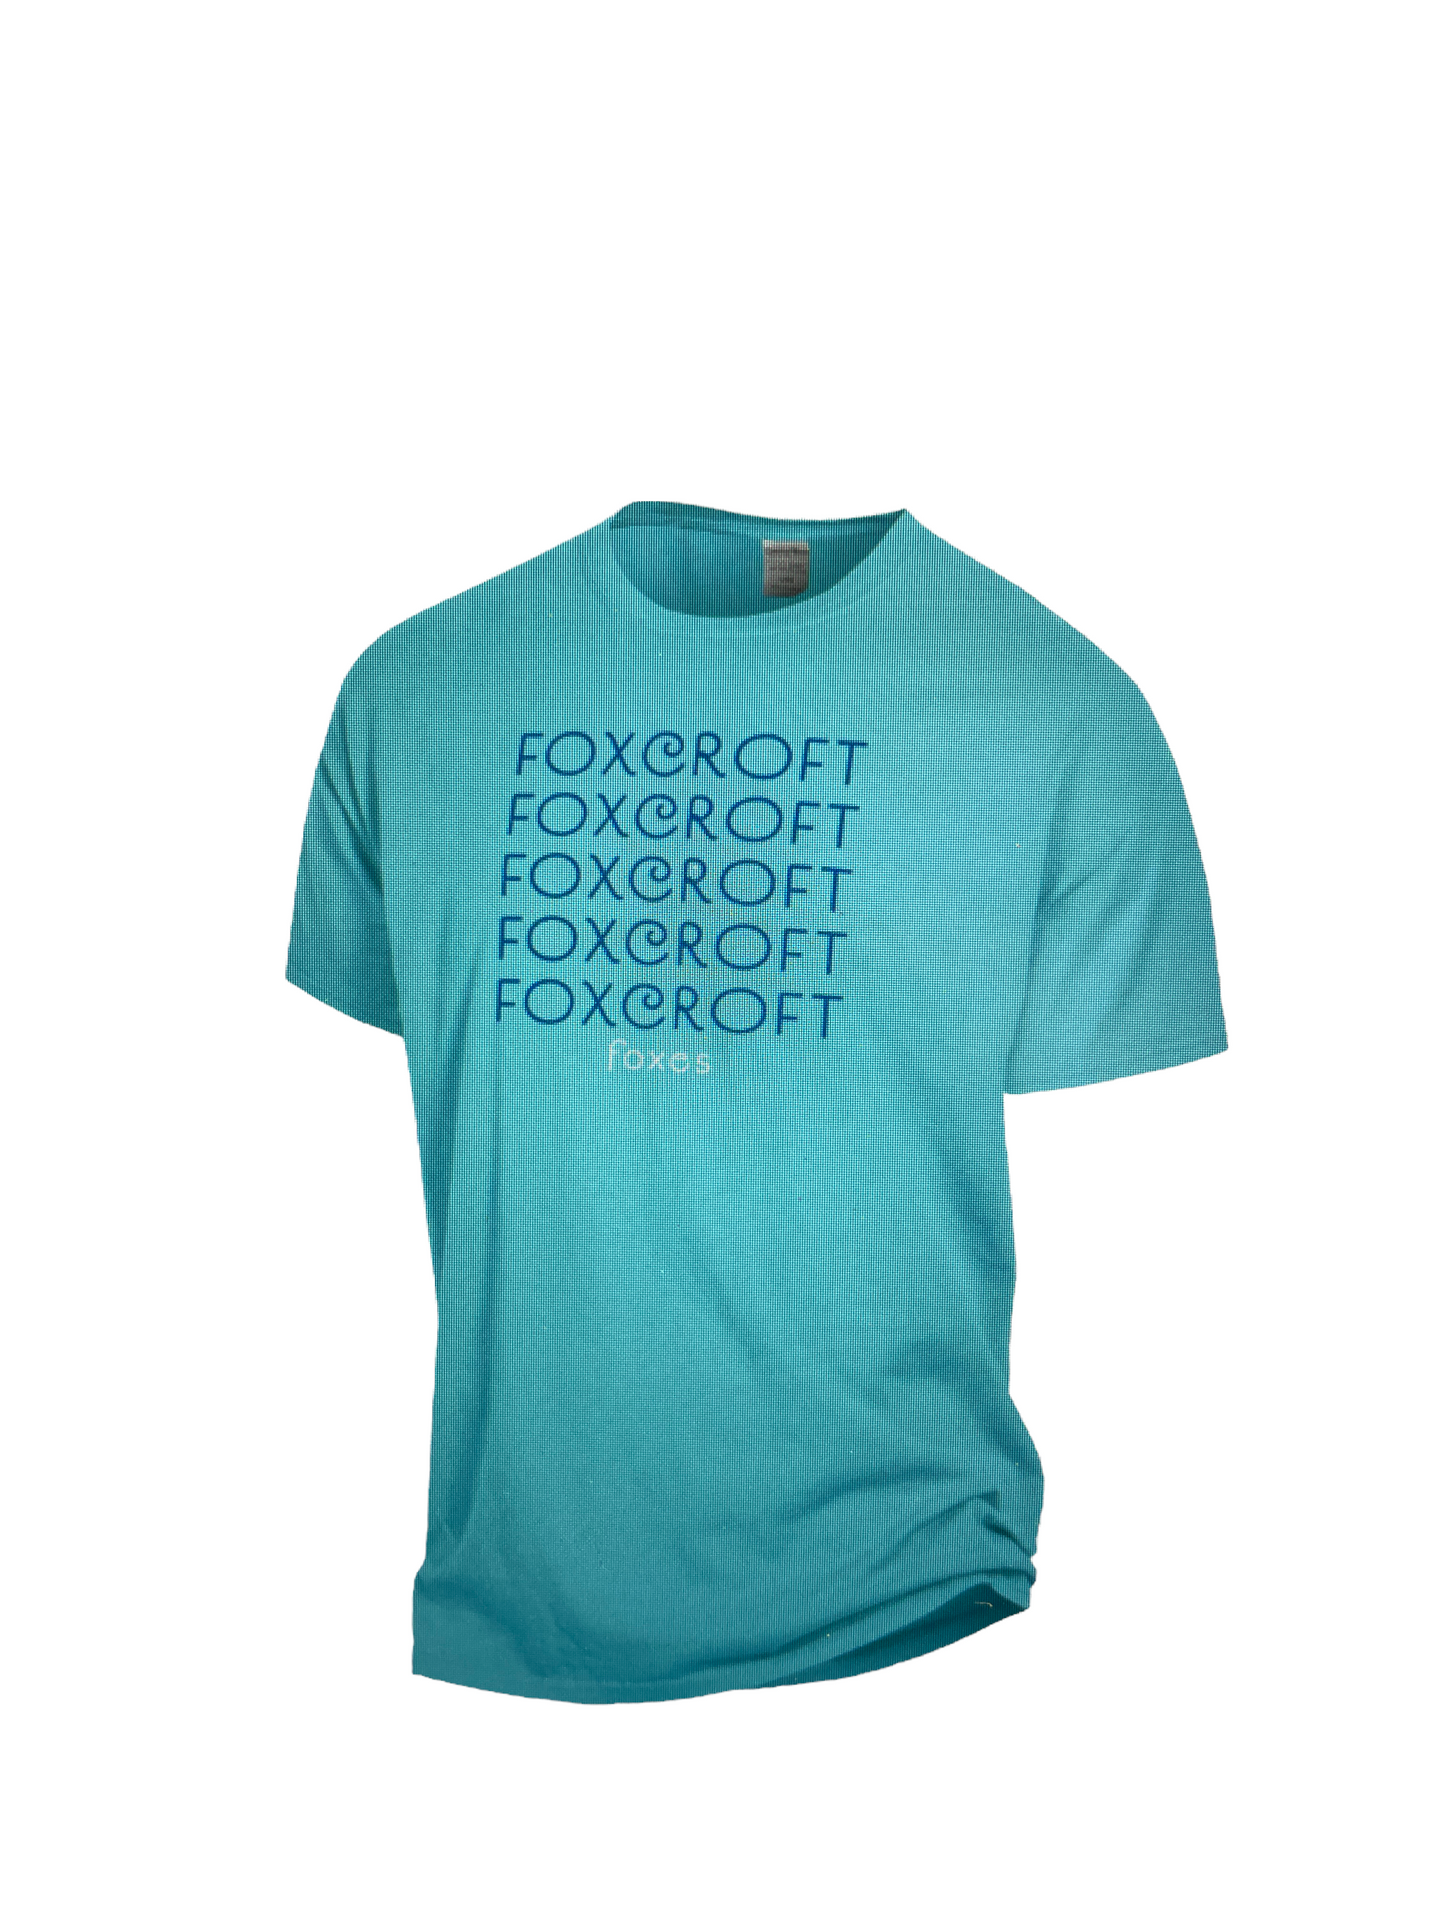 Fox and Hound t-shirts